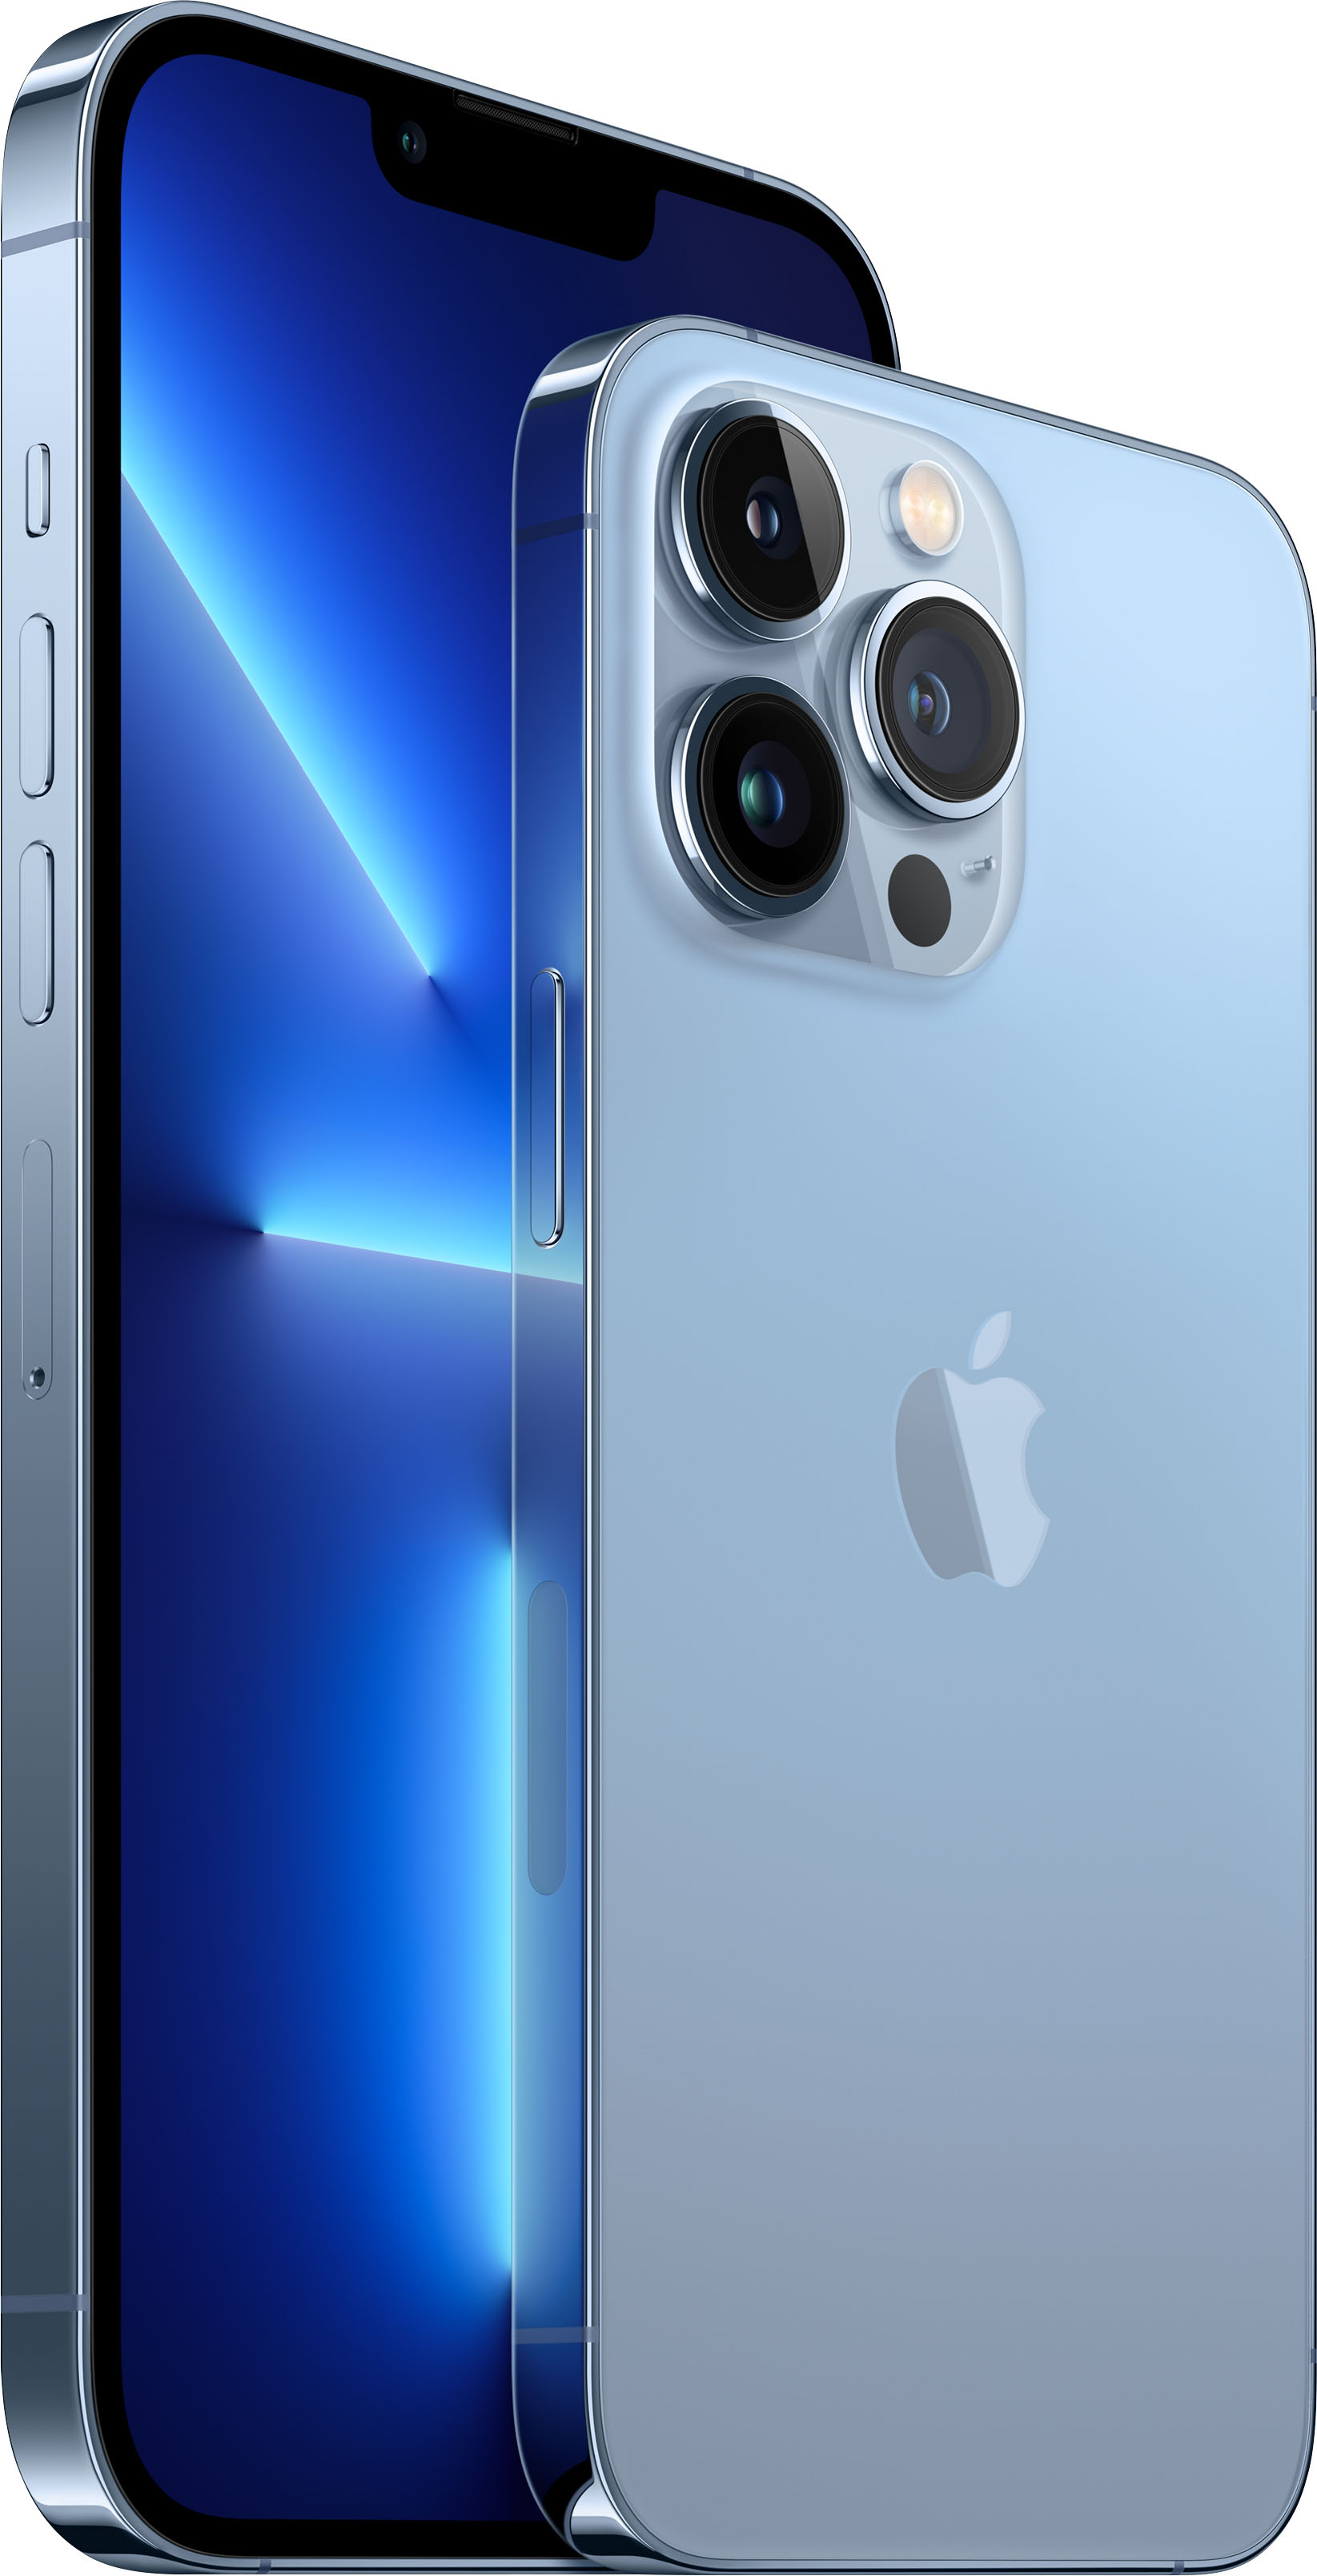 Sierra Pro Max 512gb Blue 13 Iphone